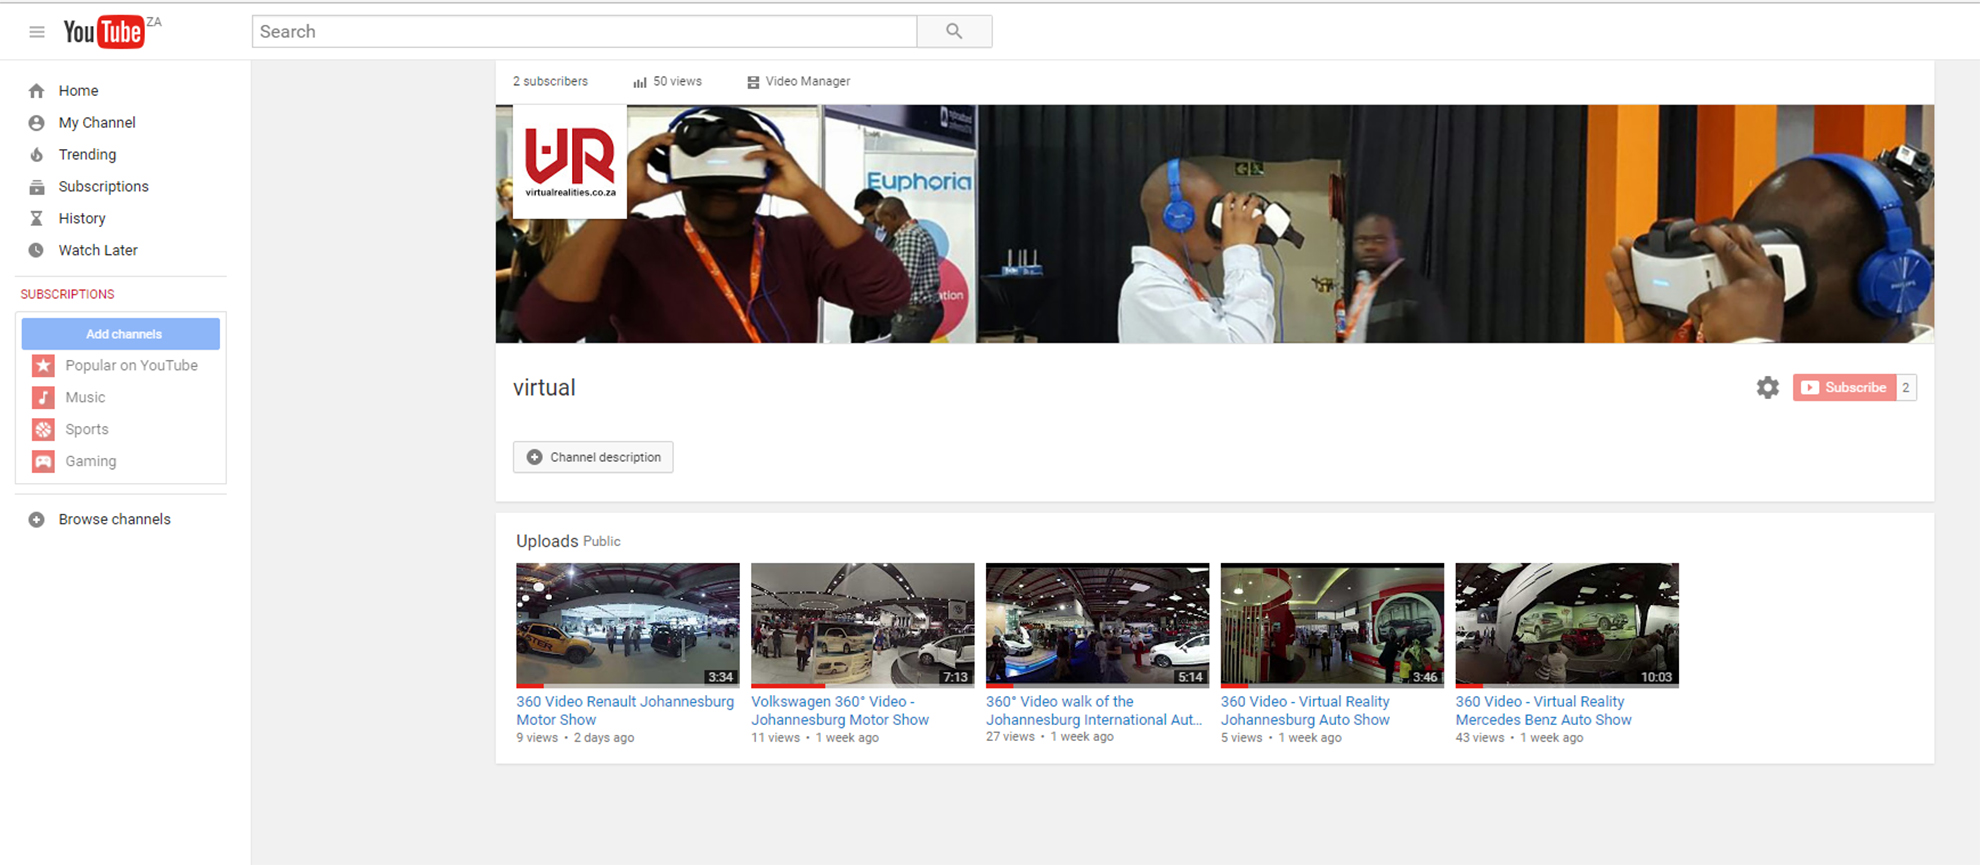 Virtual Realities on YouTube